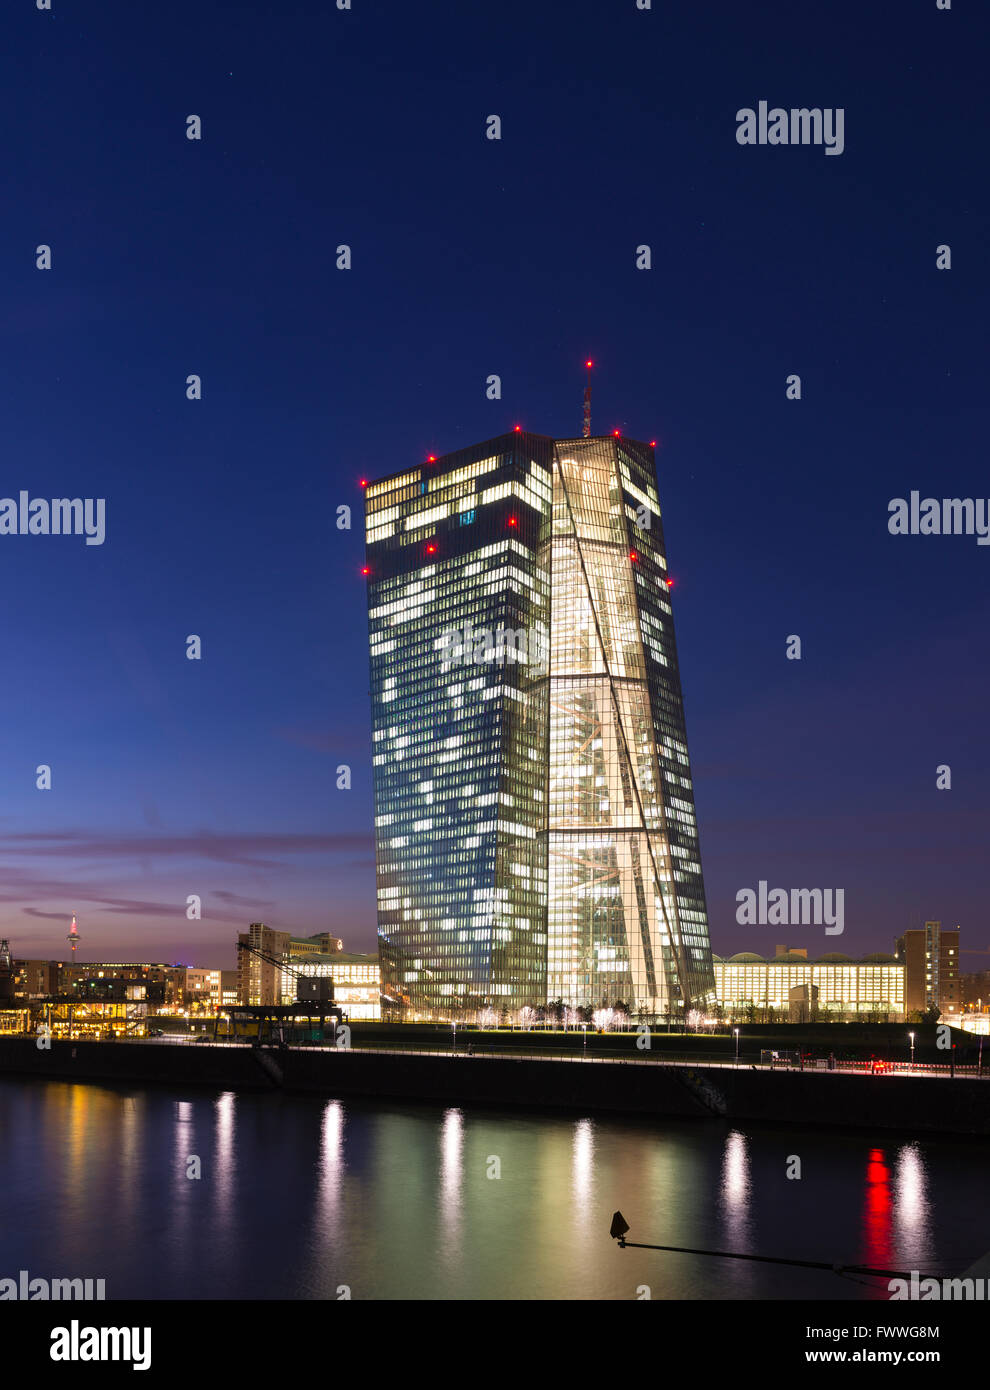 Vivement éclairée Banque centrale européenne, BCE, au crépuscule, heure bleue, Francfort, Hesse, Allemagne Banque D'Images